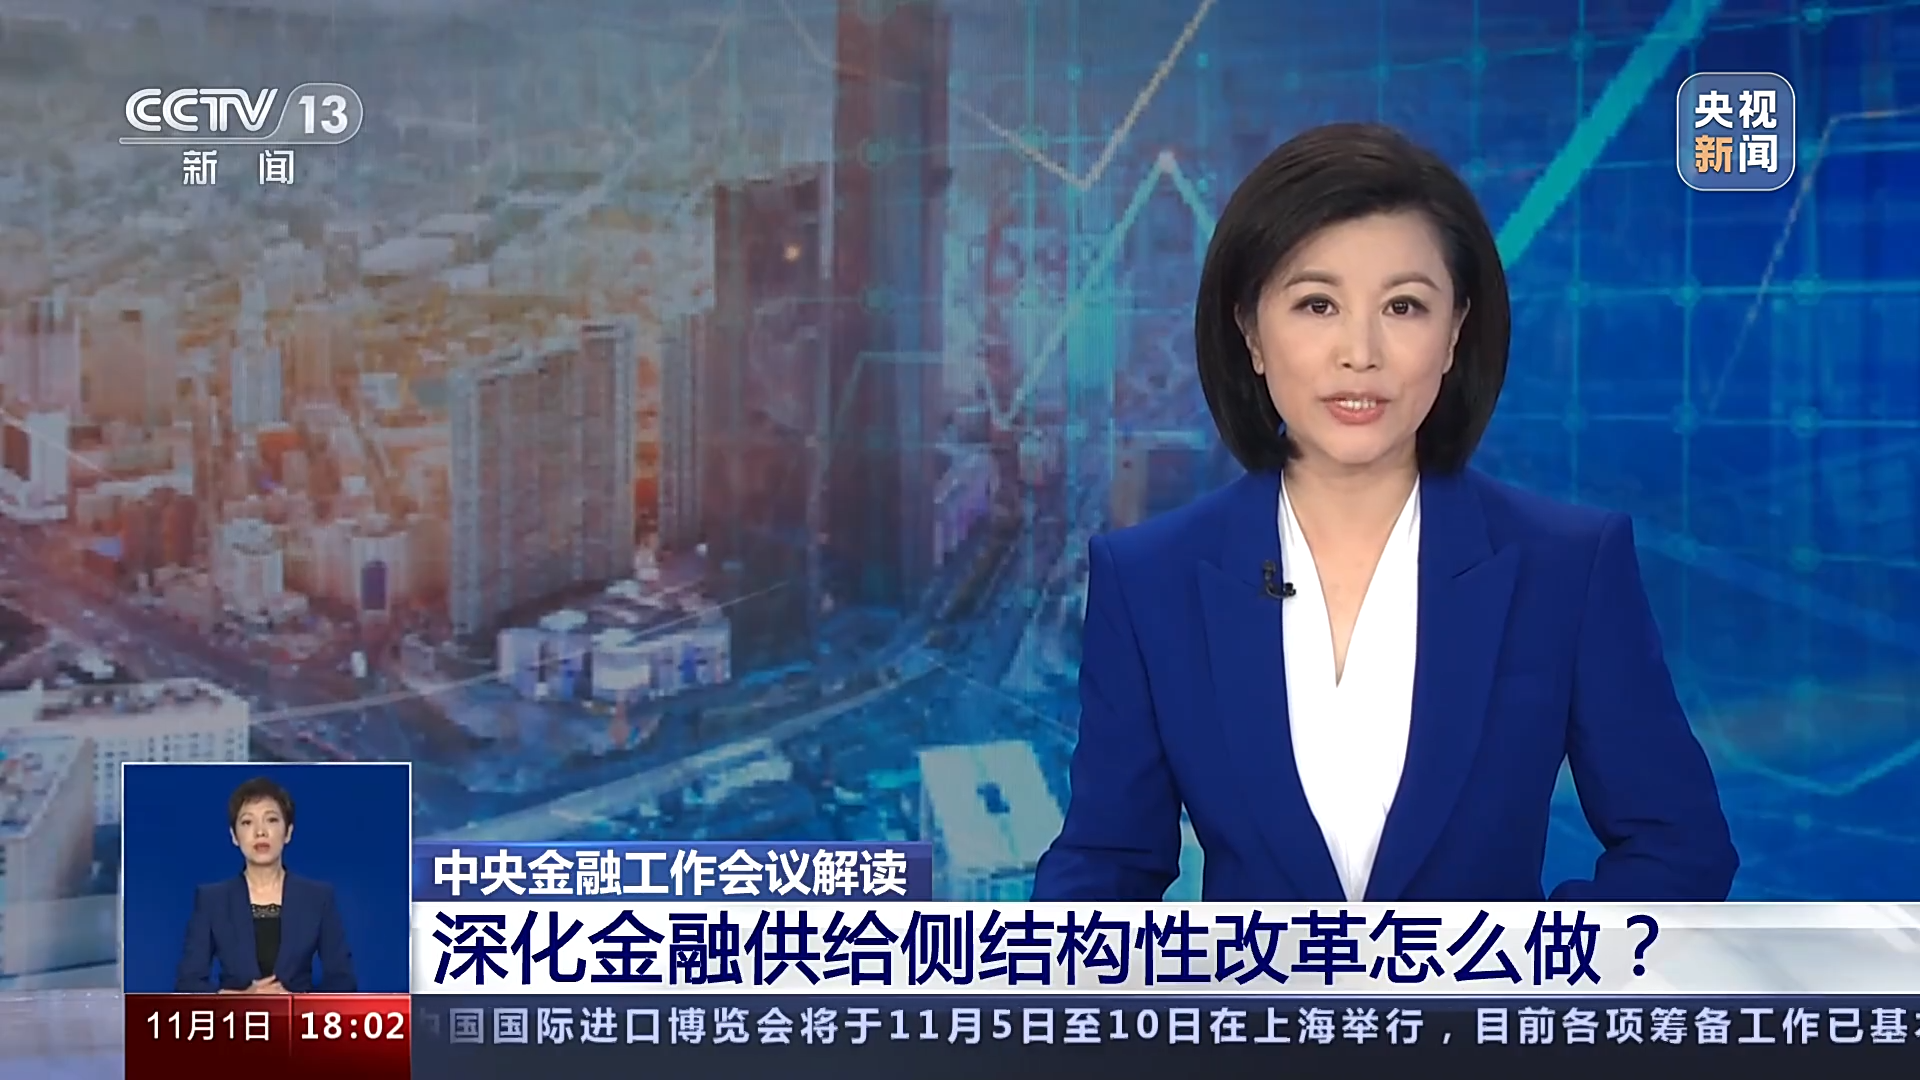 消息显示:深圳市地方金融监督管理局关于2022年度绿色金融能力建设服务项目招标公告 1